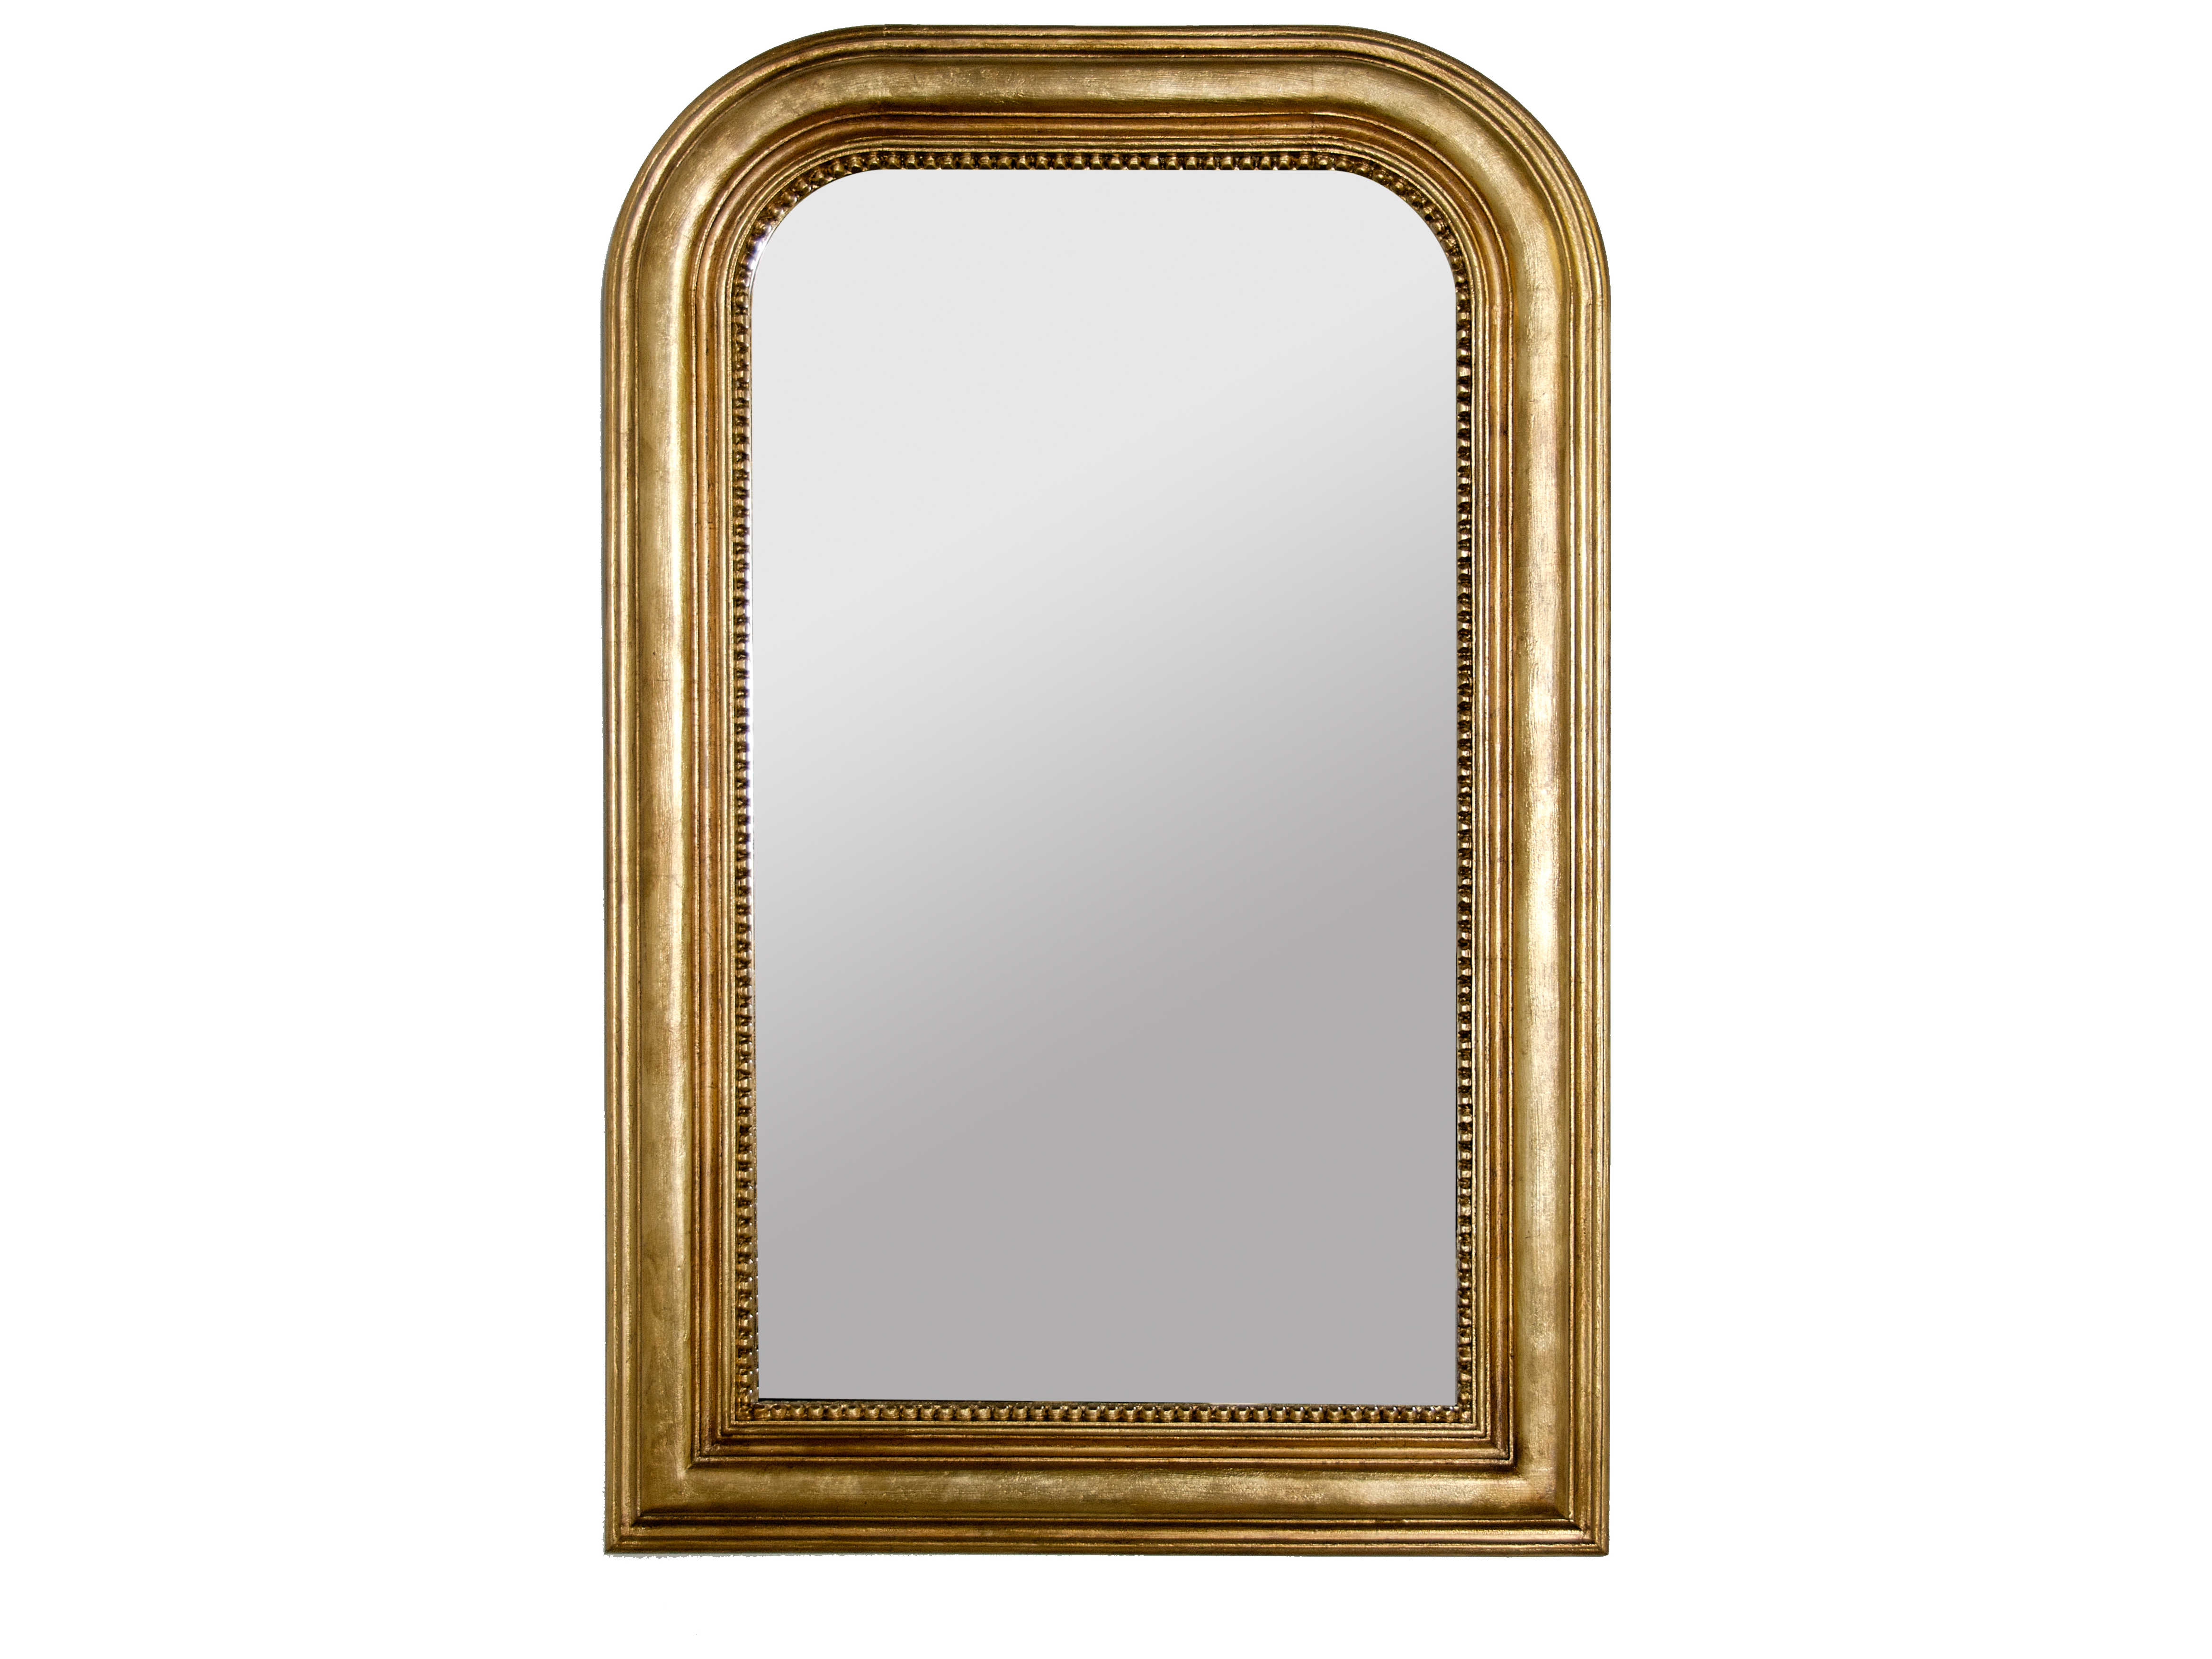 Зеркало настенное 60. Зеркало Луи АРПО 1743. Зеркало DG Home 003999710. Зеркало 362 - model: настенное прямоугольное зеркало Gold Bronze Wall Mirror. Louvre Home зеркало.